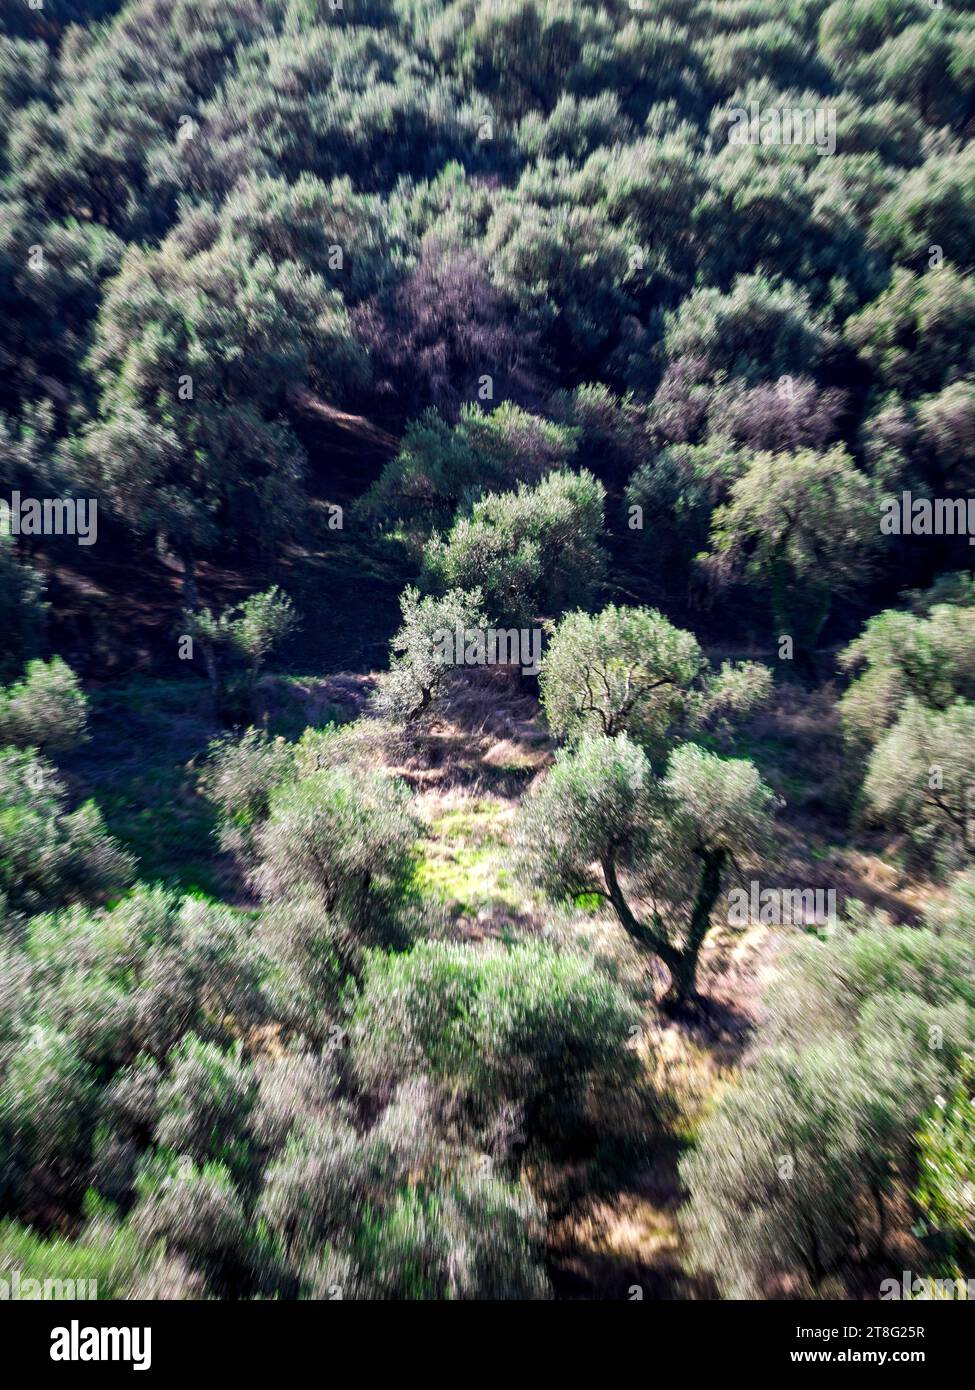 Oliveti alle pendici del monte Pandokratoras a Corfù, nelle Isole Ionie della Grecia, che producono olive destinate alla produzione di olio d'oliva Foto Stock